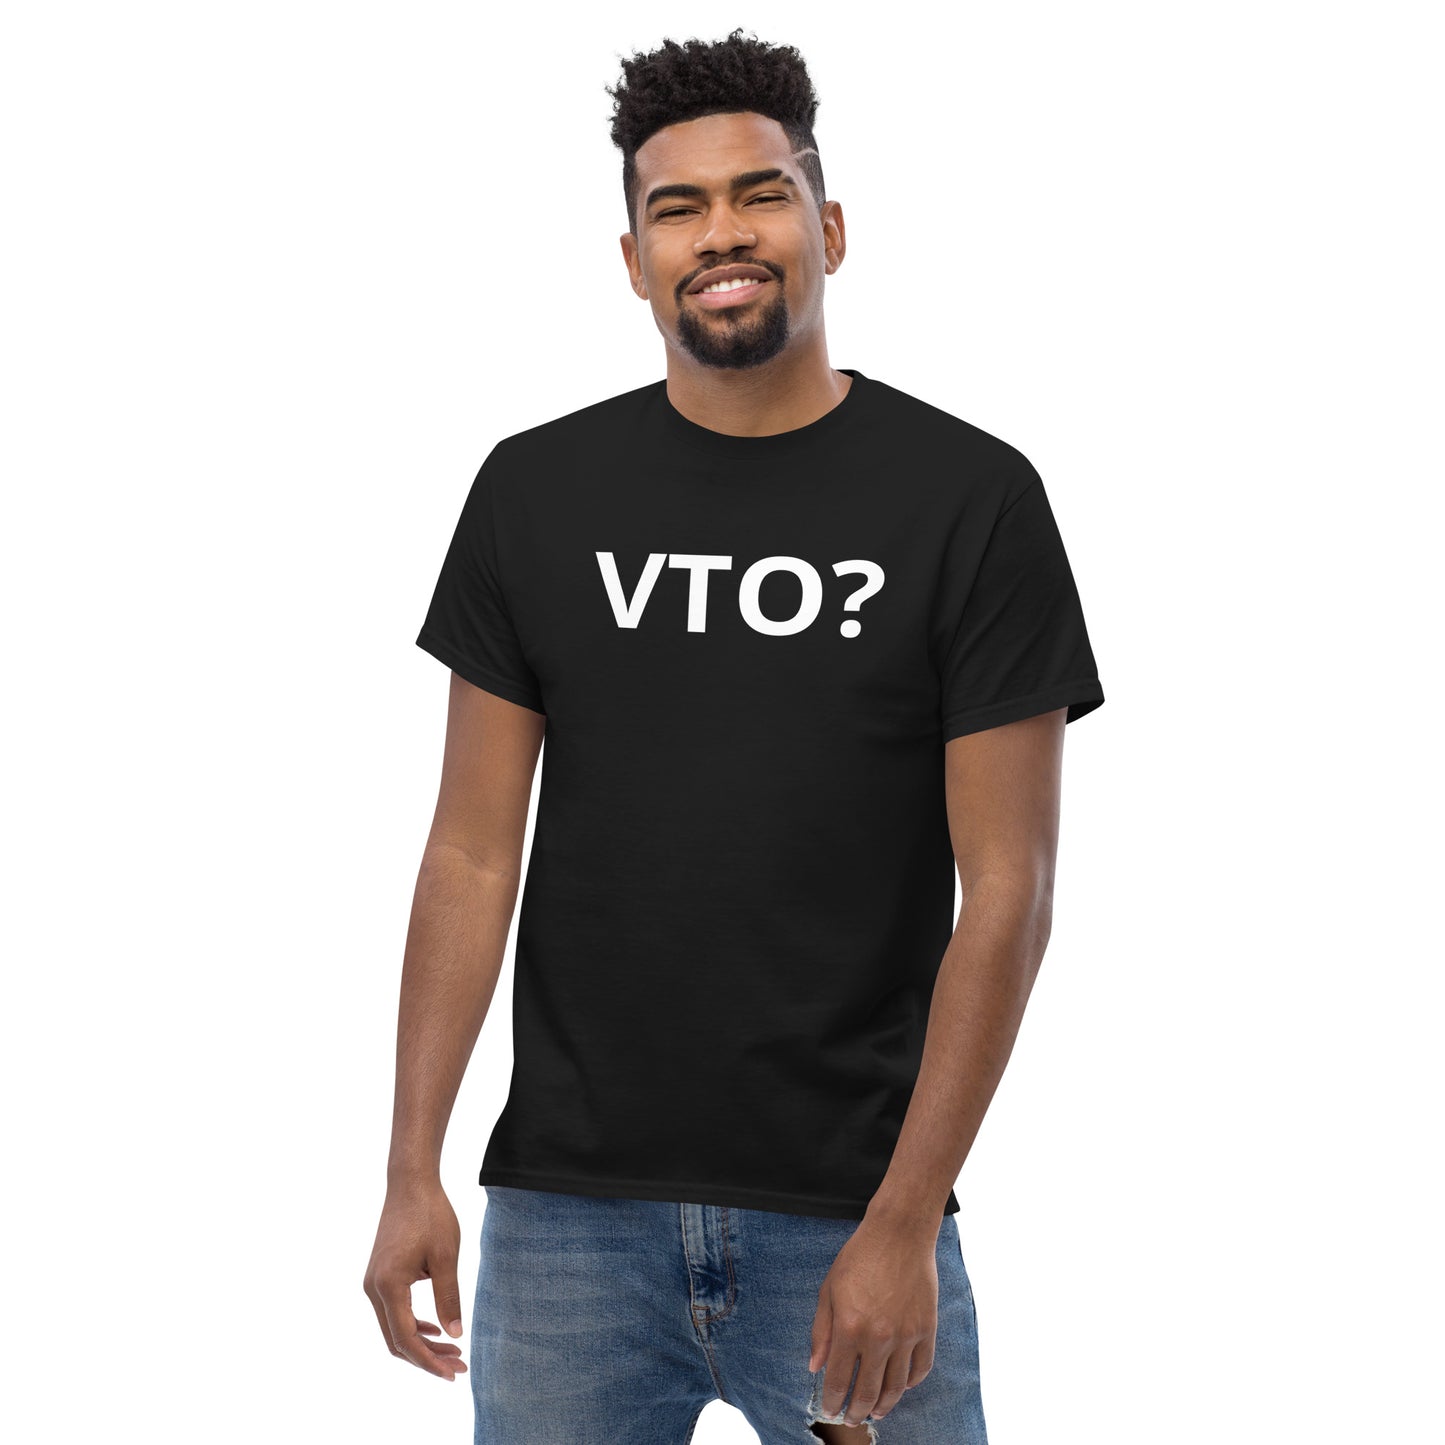 VTO? Shirt